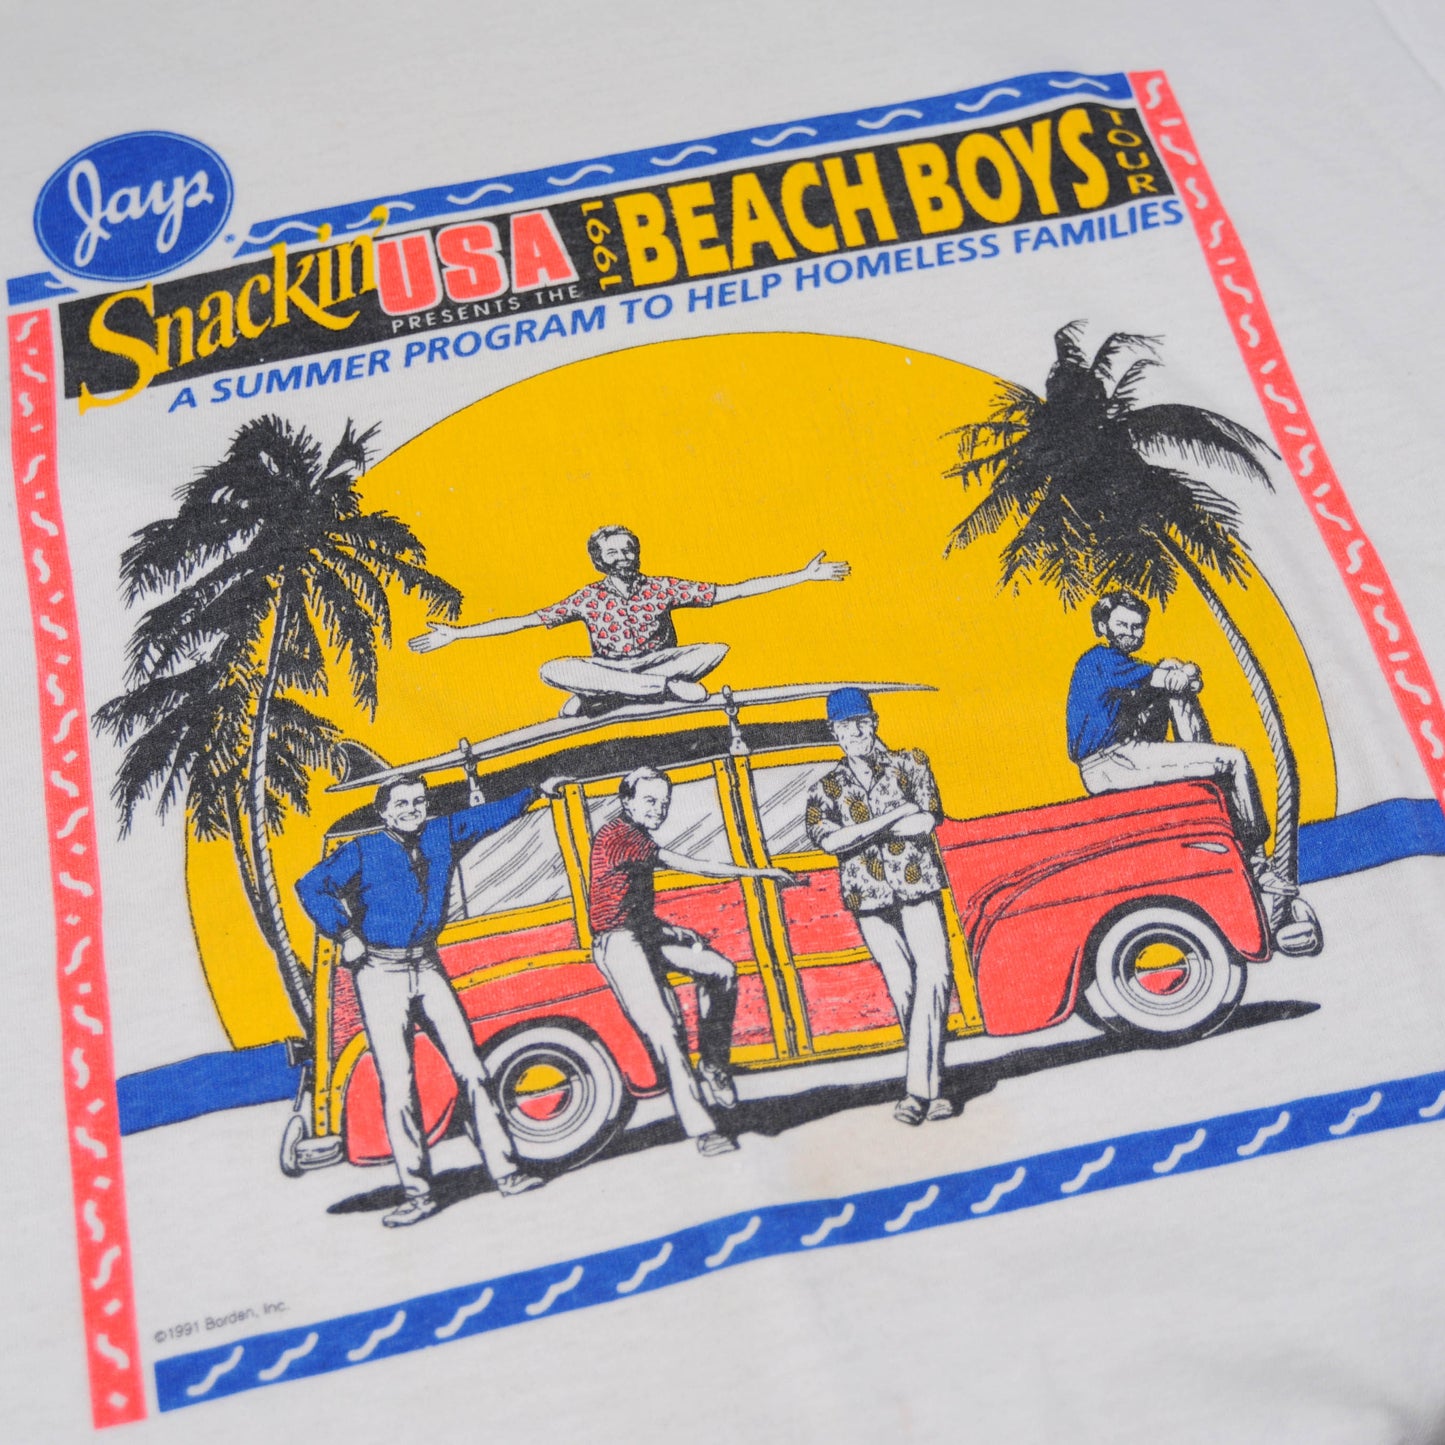 90's Beach Boys 1991ツアーTシャツ(L)/A2700T-O